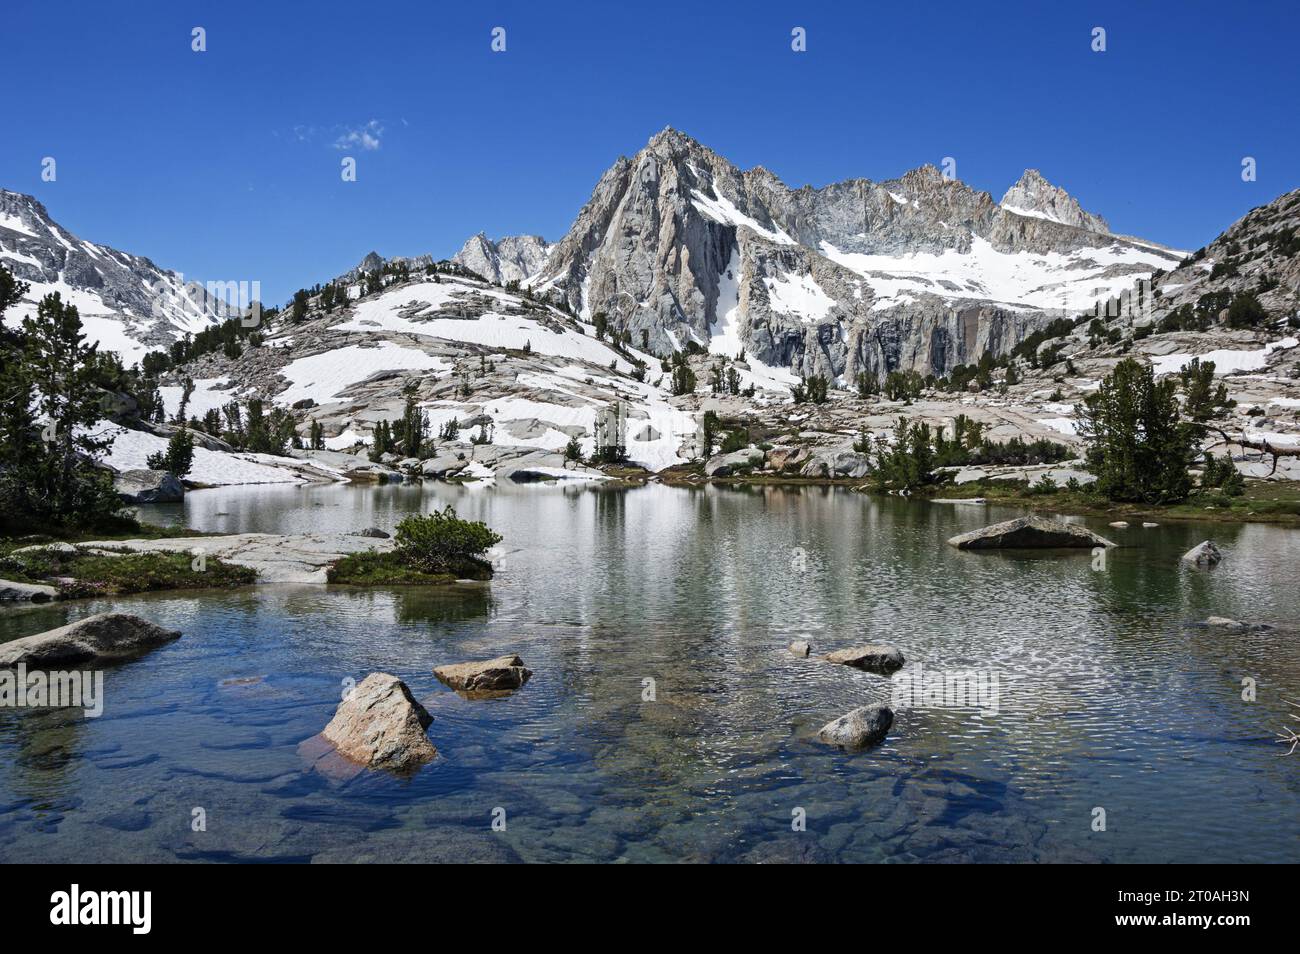 Picture Peak et Sailor Lake dans la nature sauvage John Muir des montagnes de l'est de la Sierra Nevada en Californie avec de la neige au sol en juillet Banque D'Images